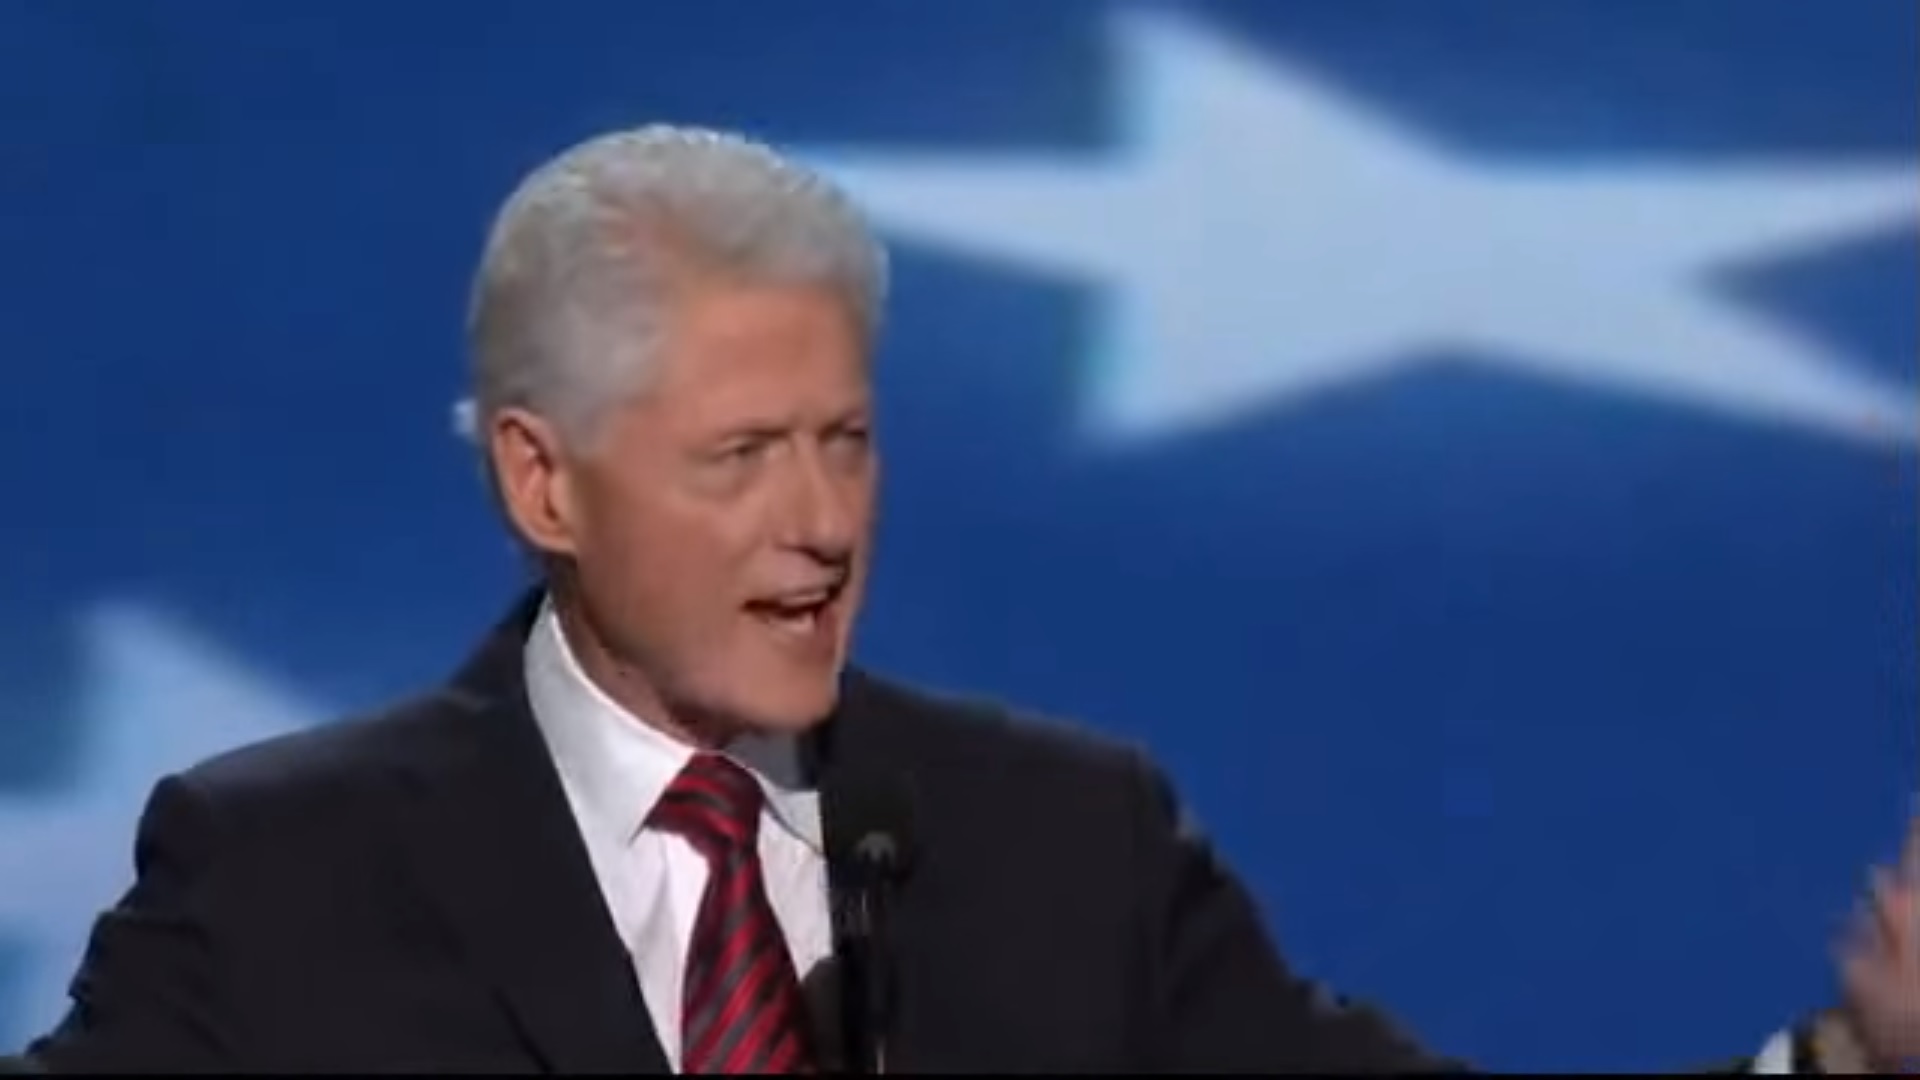 Bill Clinton in 2012.